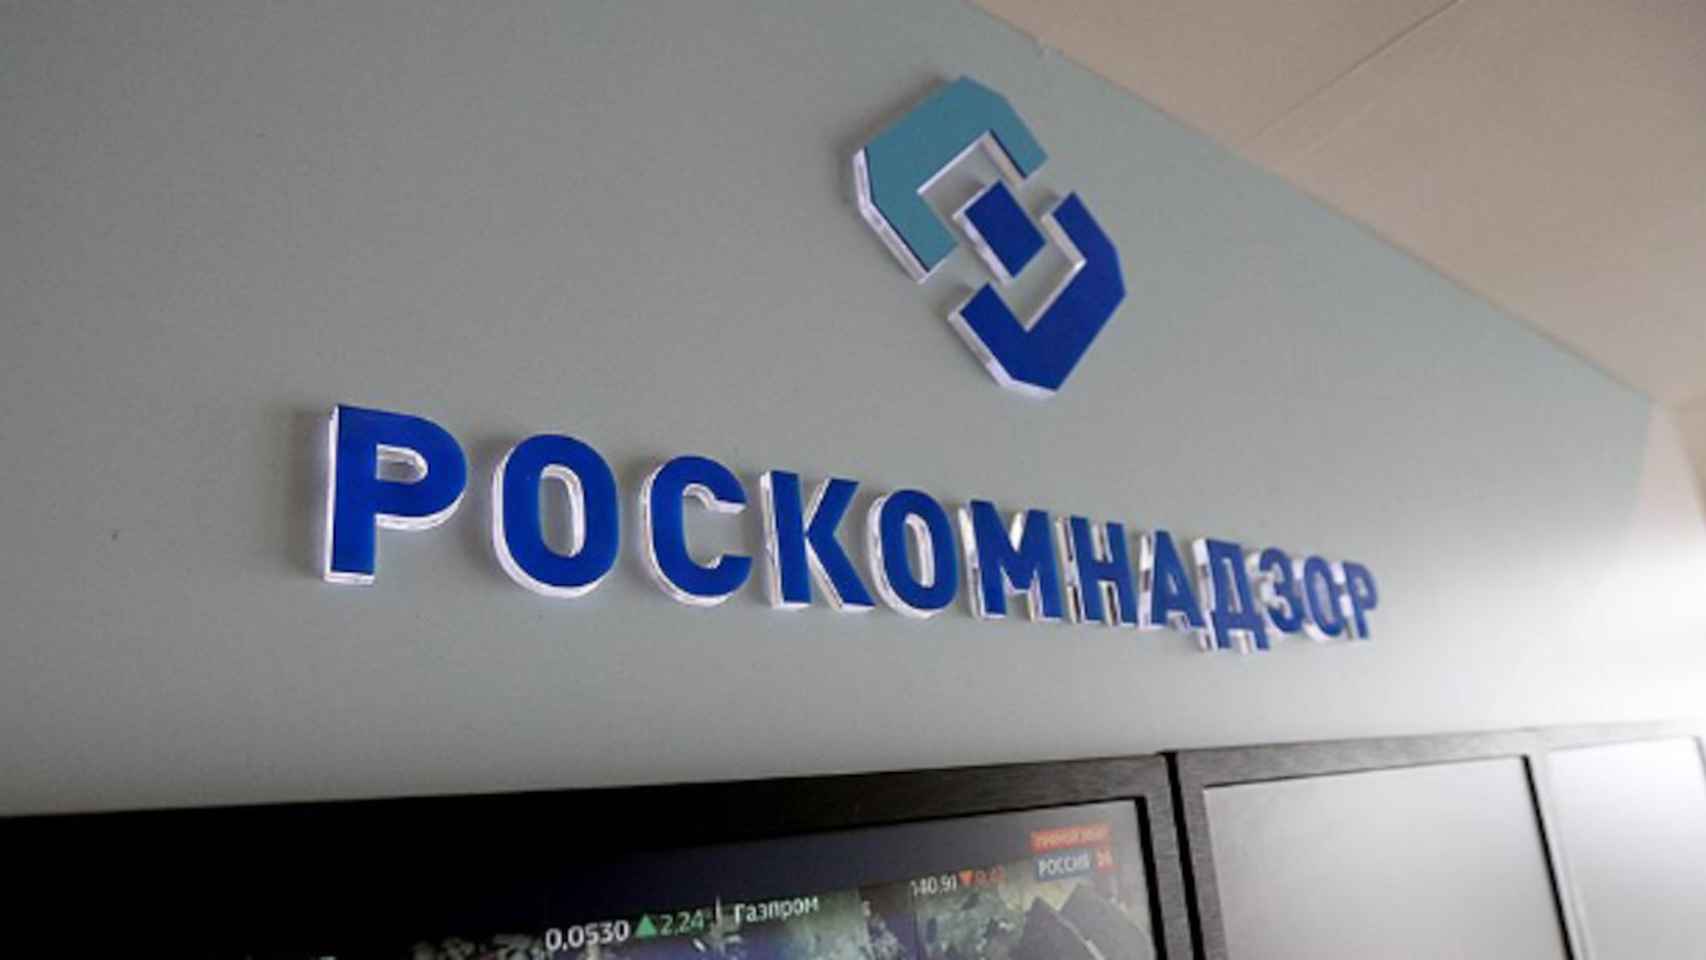 El Roskomnadzor es la agencia encargada de supervisar las telecomunicaciones rusas